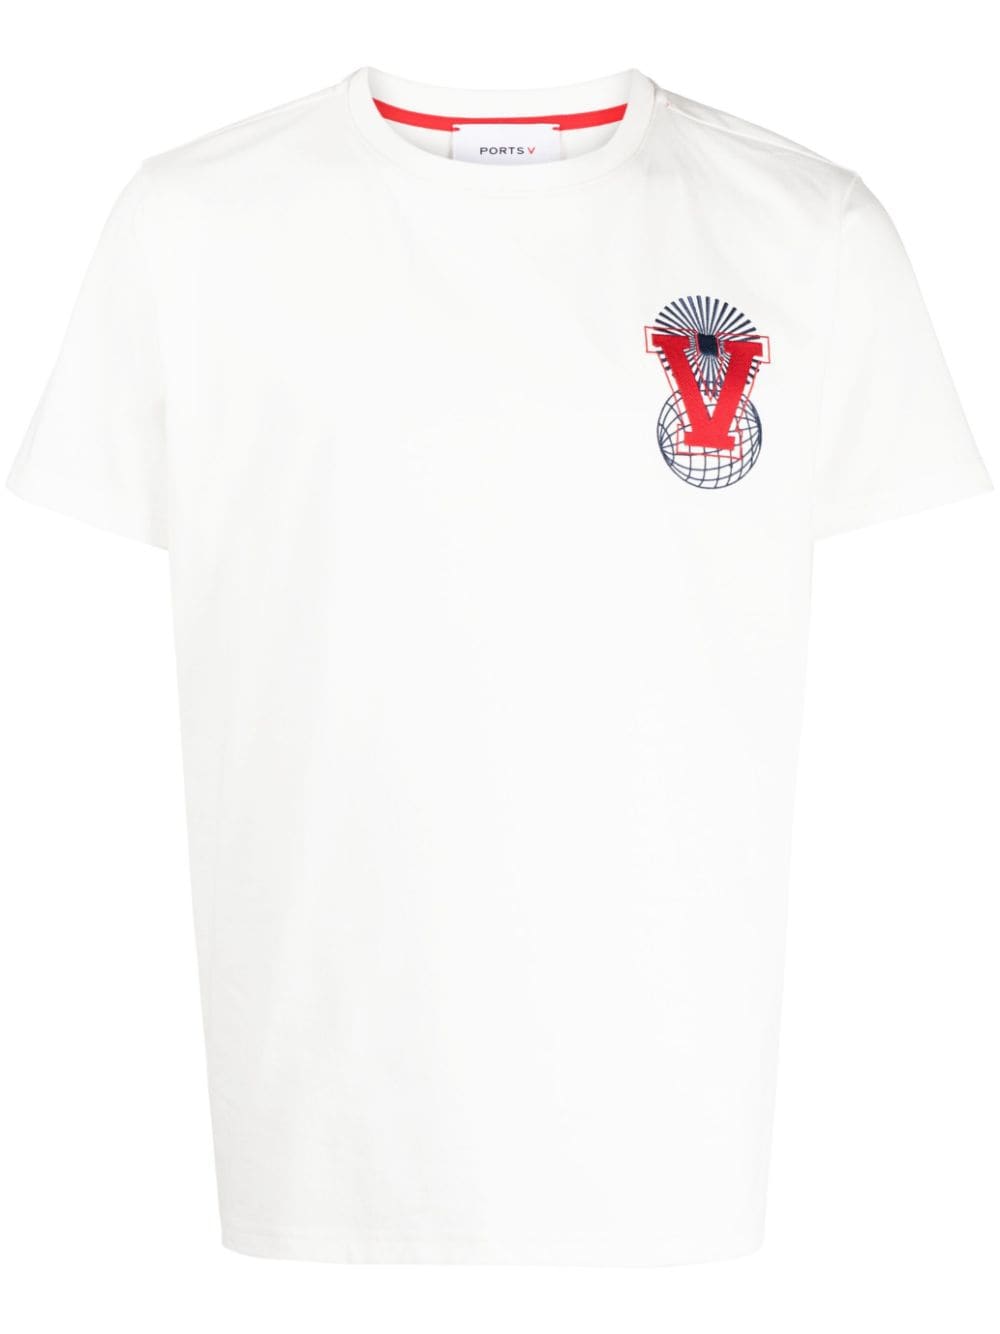 ports v t-shirt à logo brodé - blanc